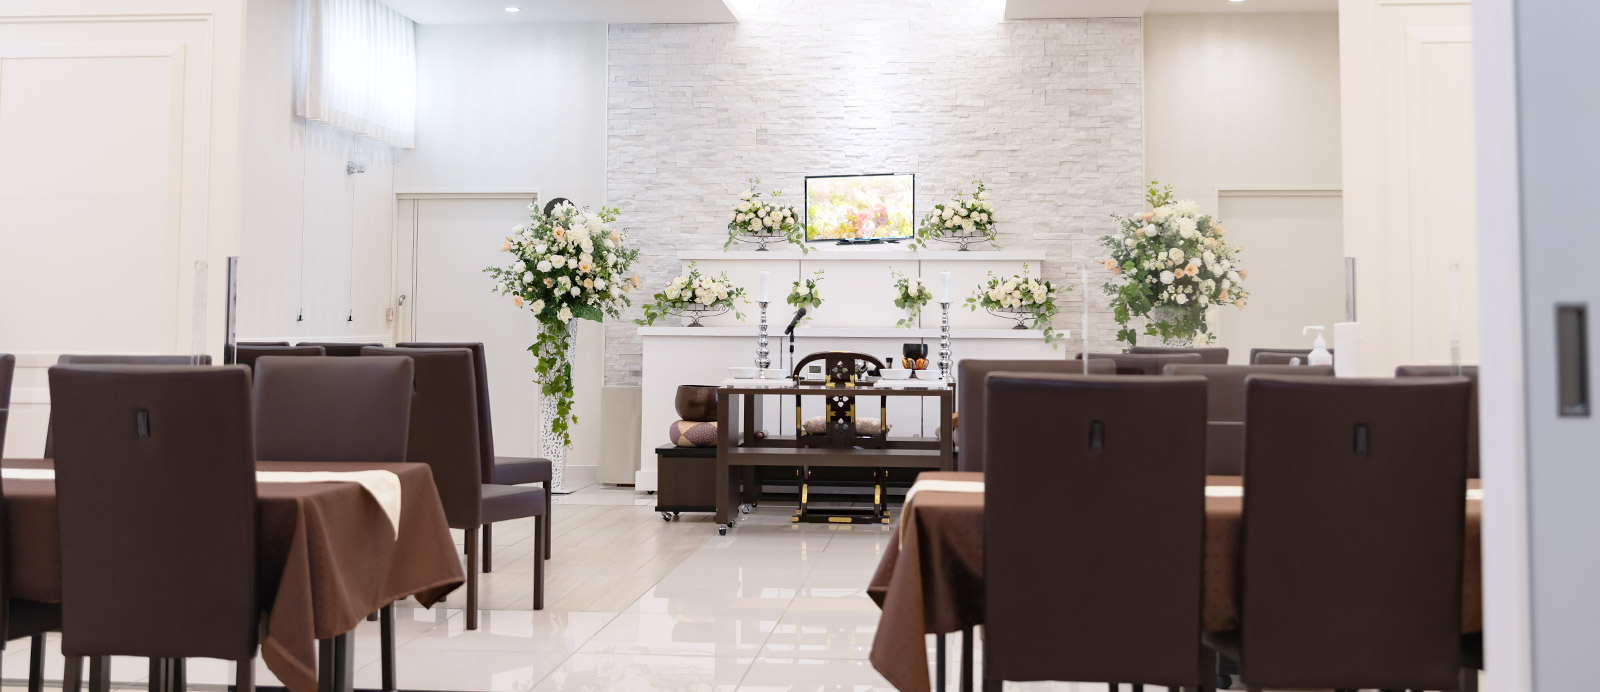 宮町ホールで葬儀・葬式が9.5万円からできる家族葬の仙和のホールの内装イメージ